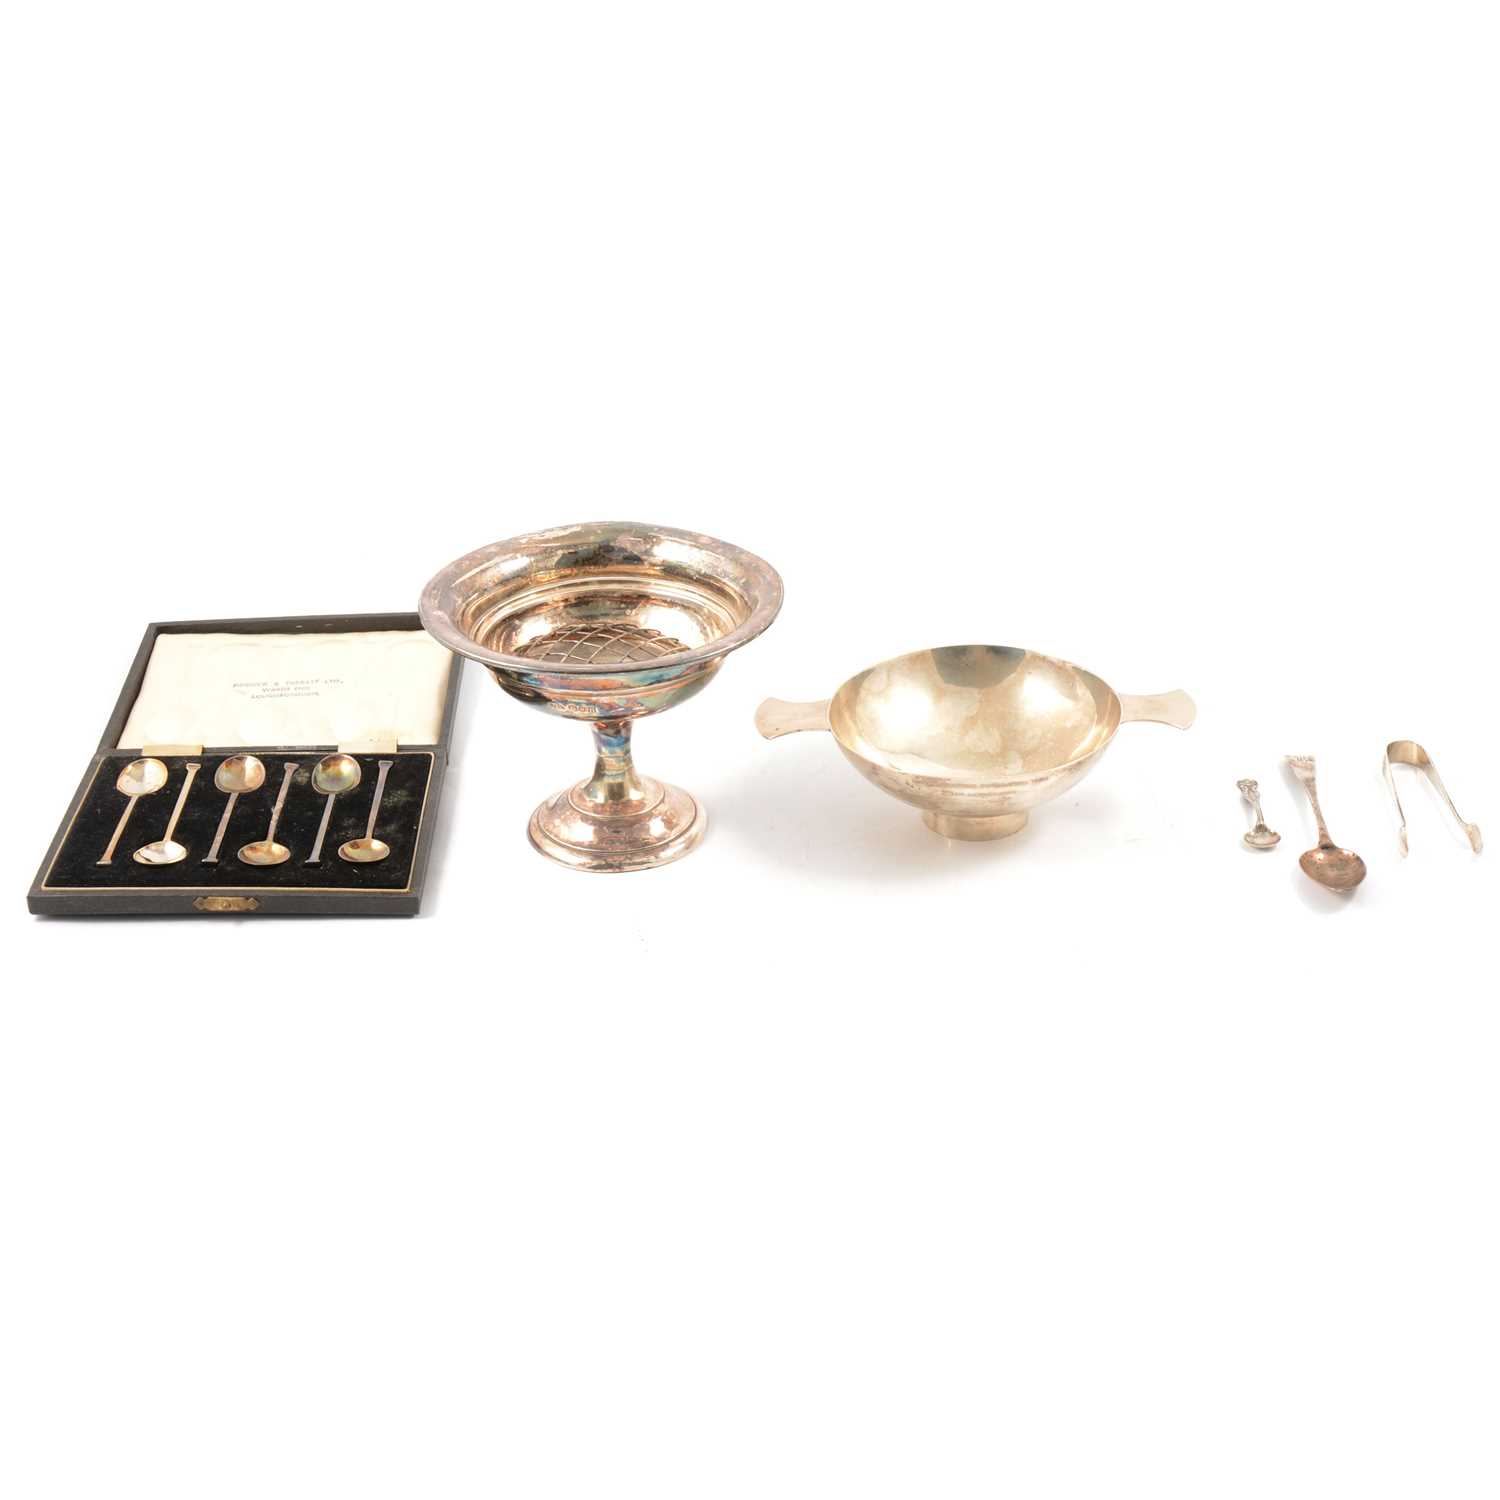 Silver quiche, set of six silver teaspoons, pedestal bowl, etc